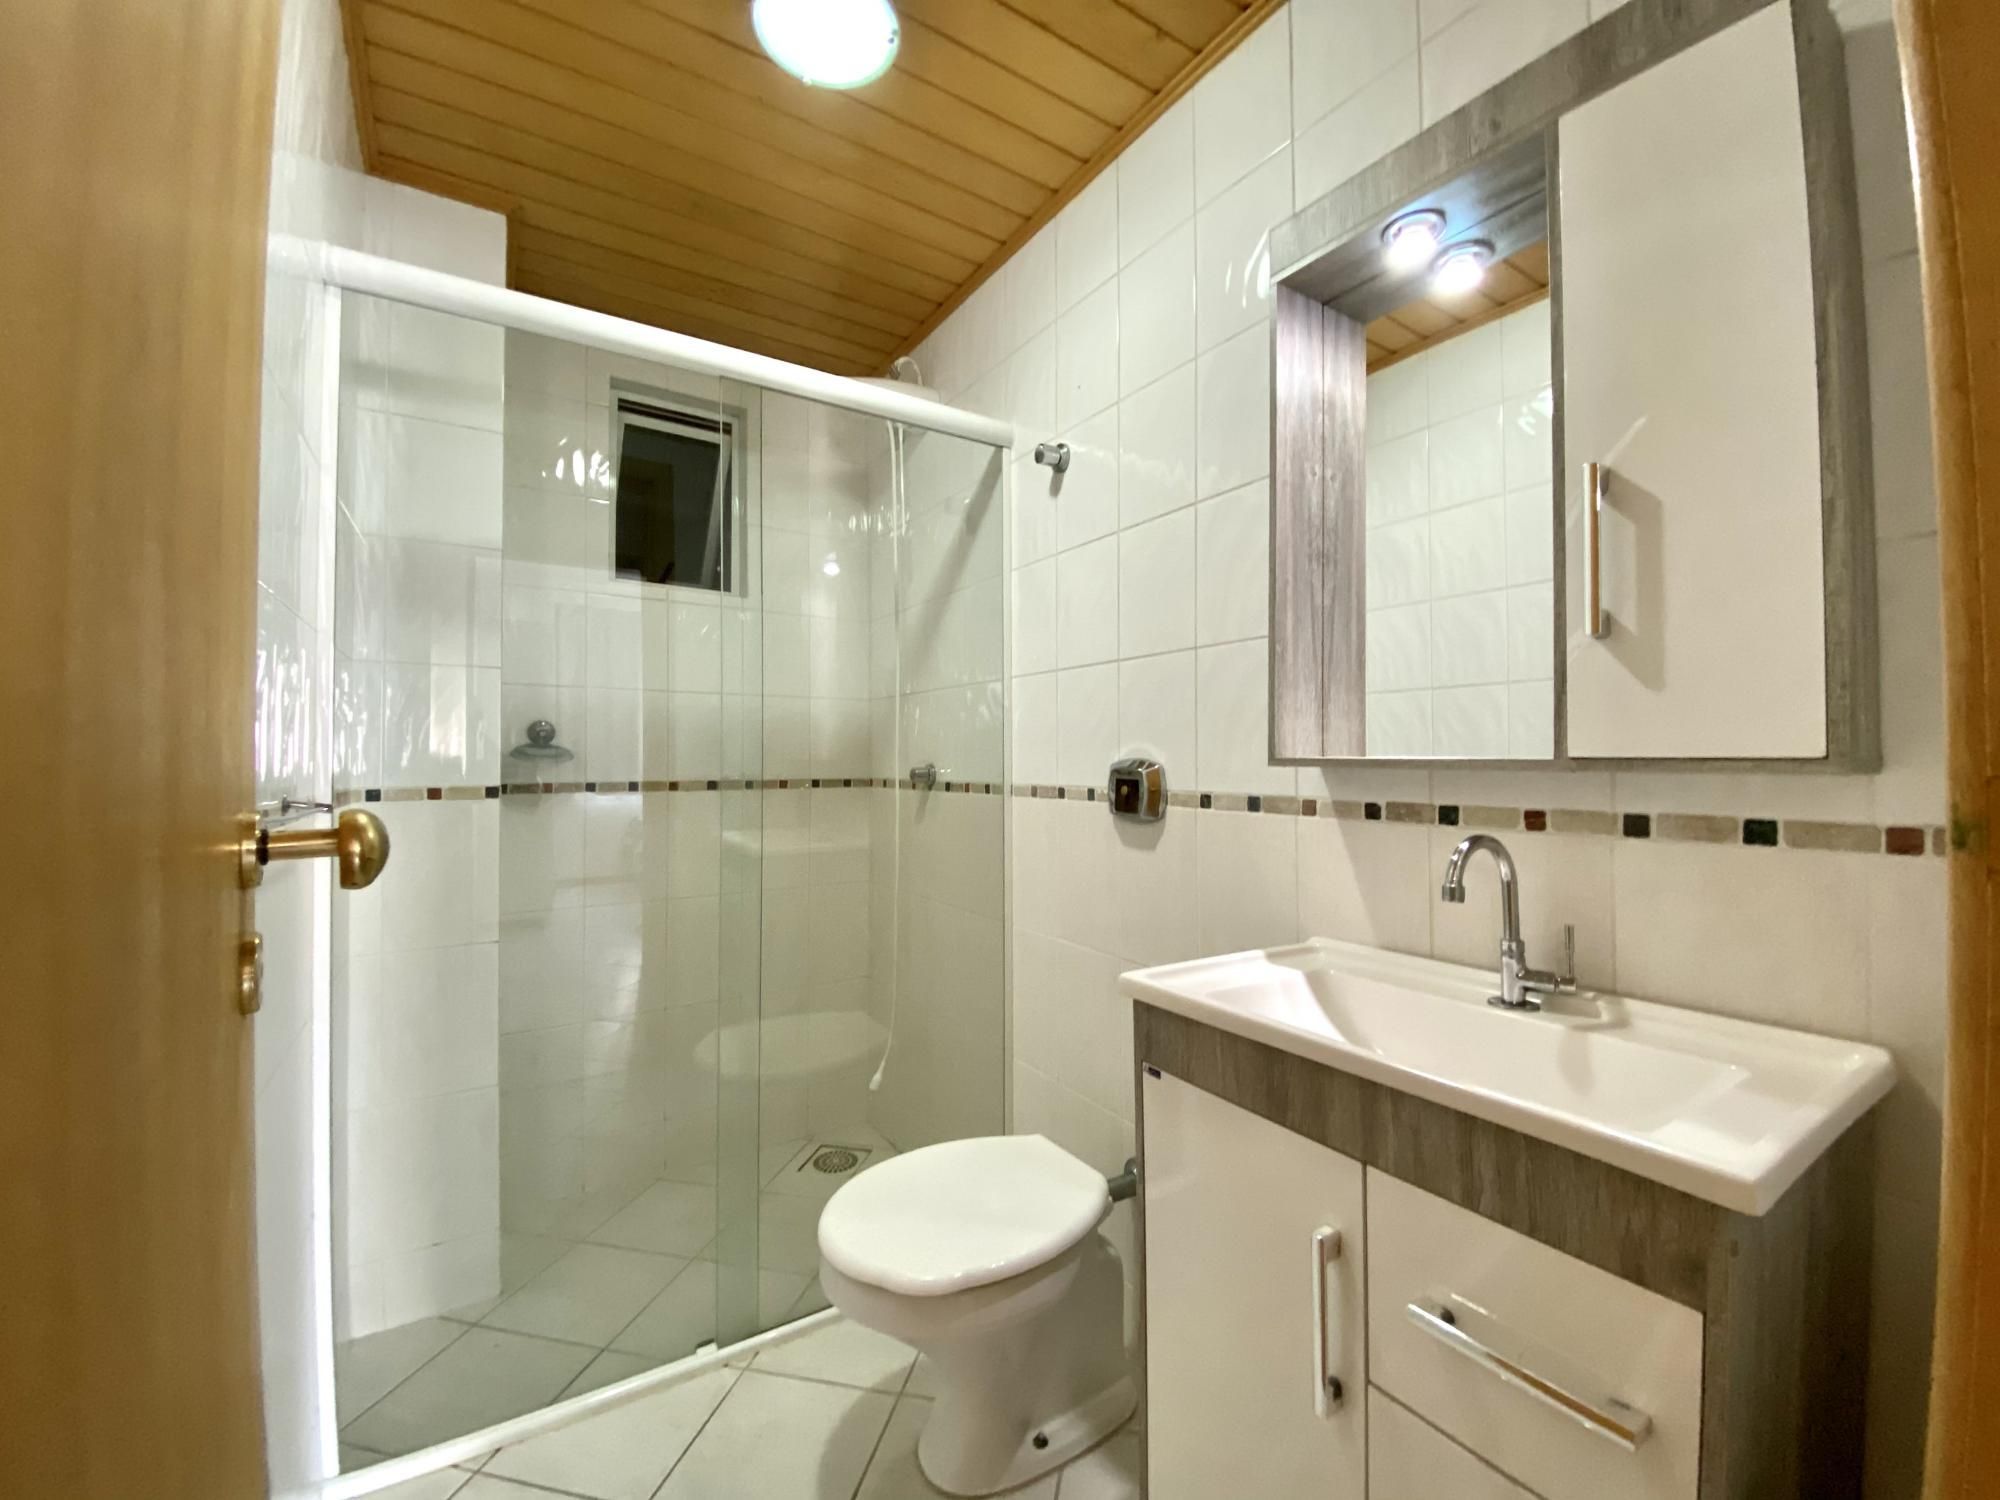 Apartamento com 2 Dormitórios para alugar, 69 m² por R$ 280,00